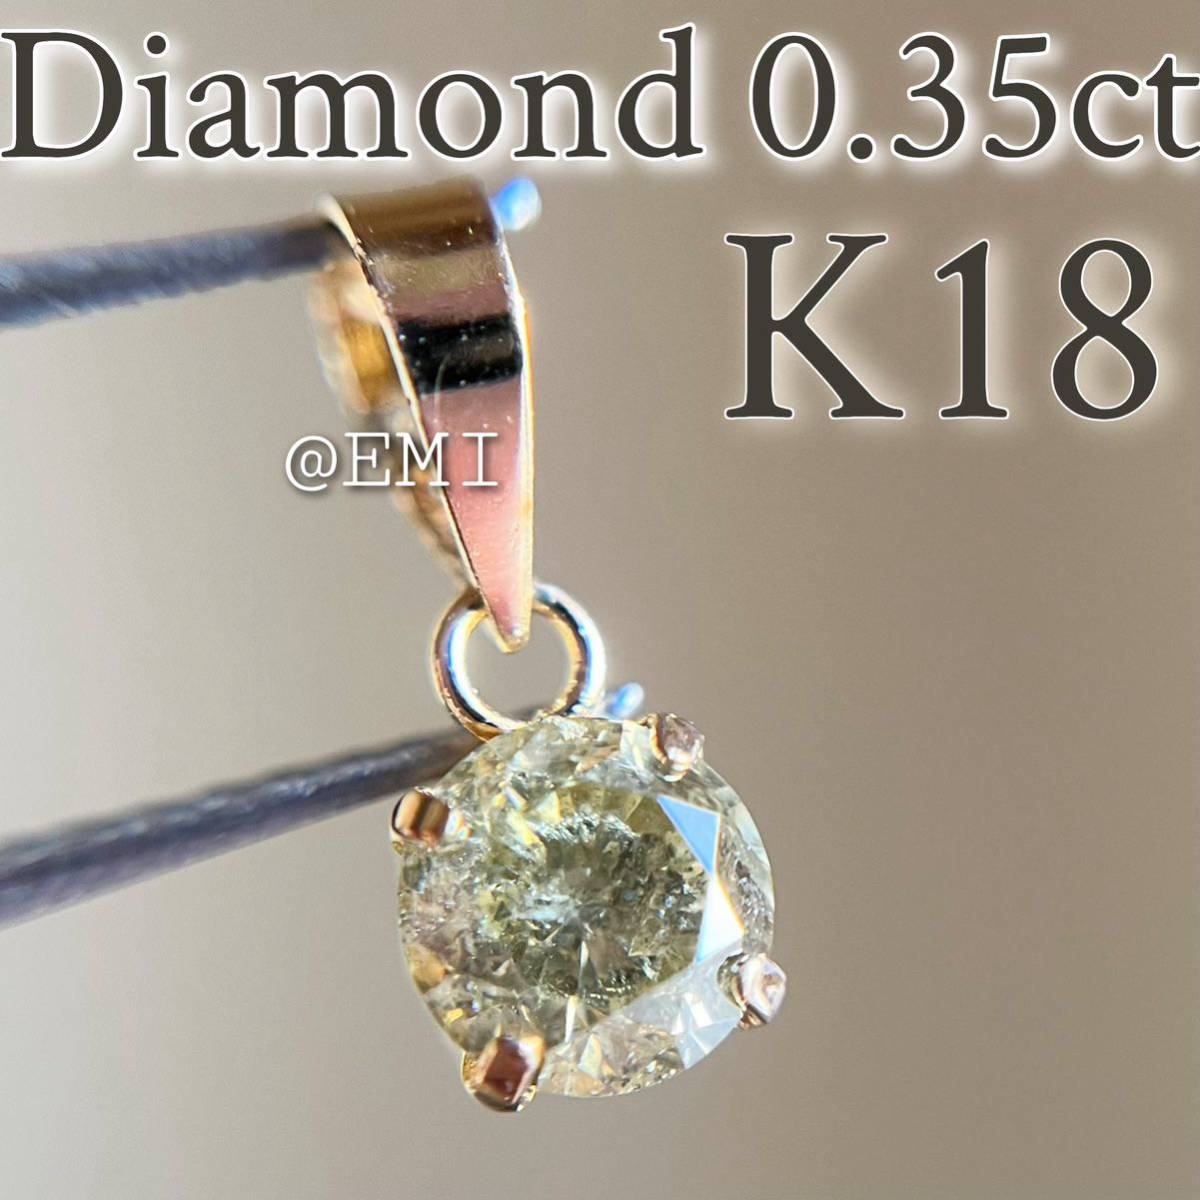 SALE 特価 】K18 天然ダイヤモンド 0 35ct ペンダントトップ 18金